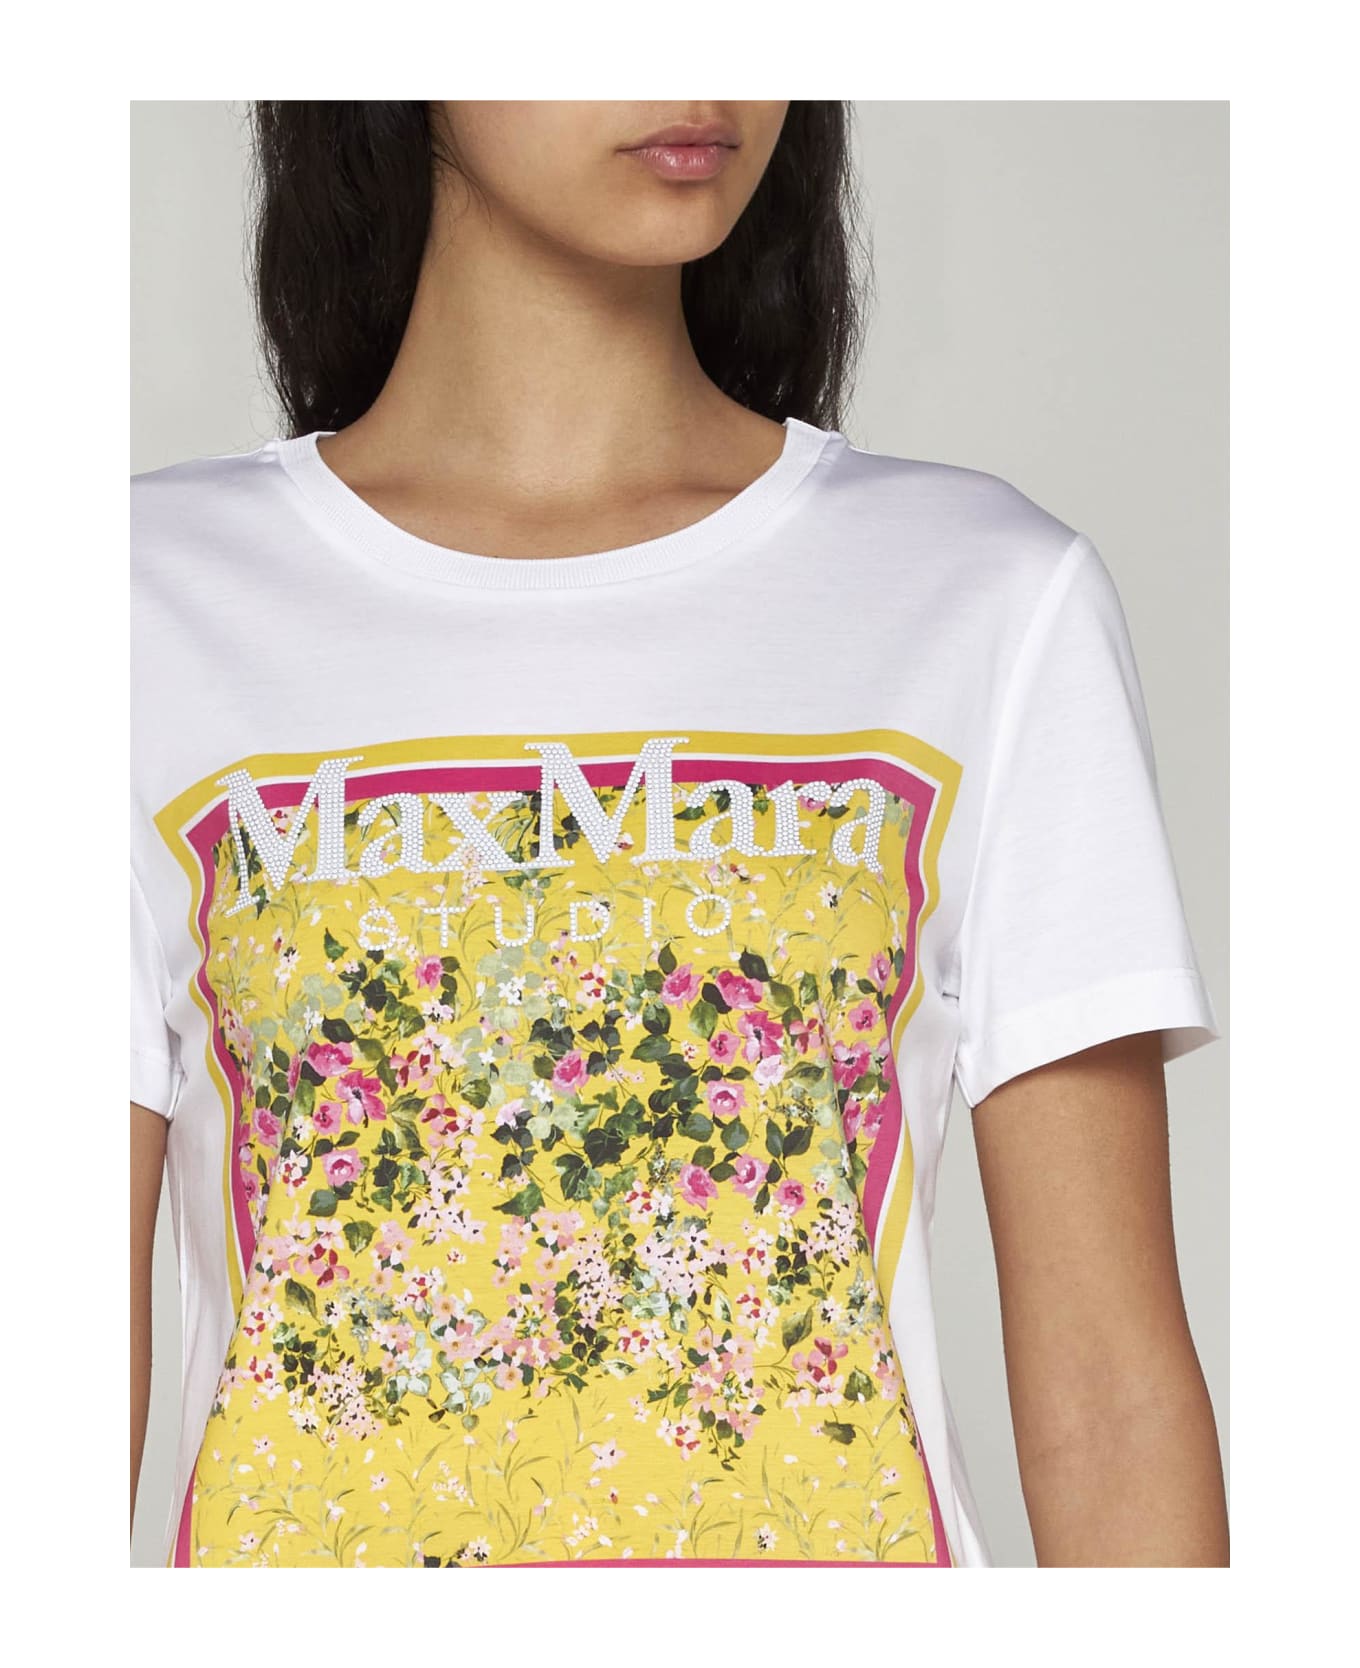 Max Mara Studio Rita Print Cotton T-shirt - White